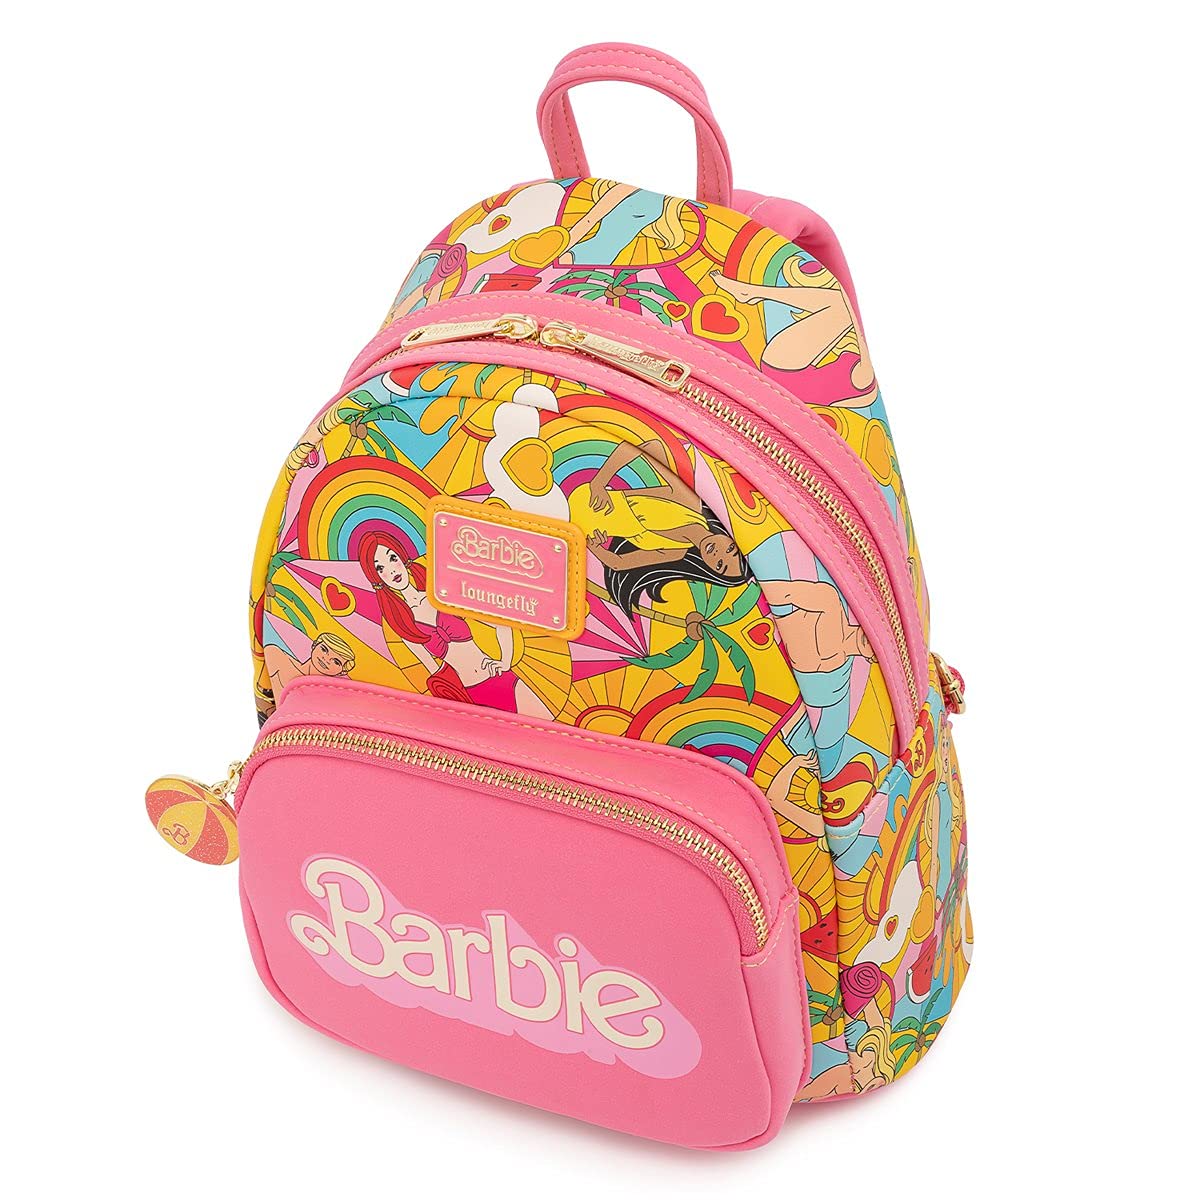 Loungefly Barbie Fun in the Sun Mini Backpack Pink-Multi